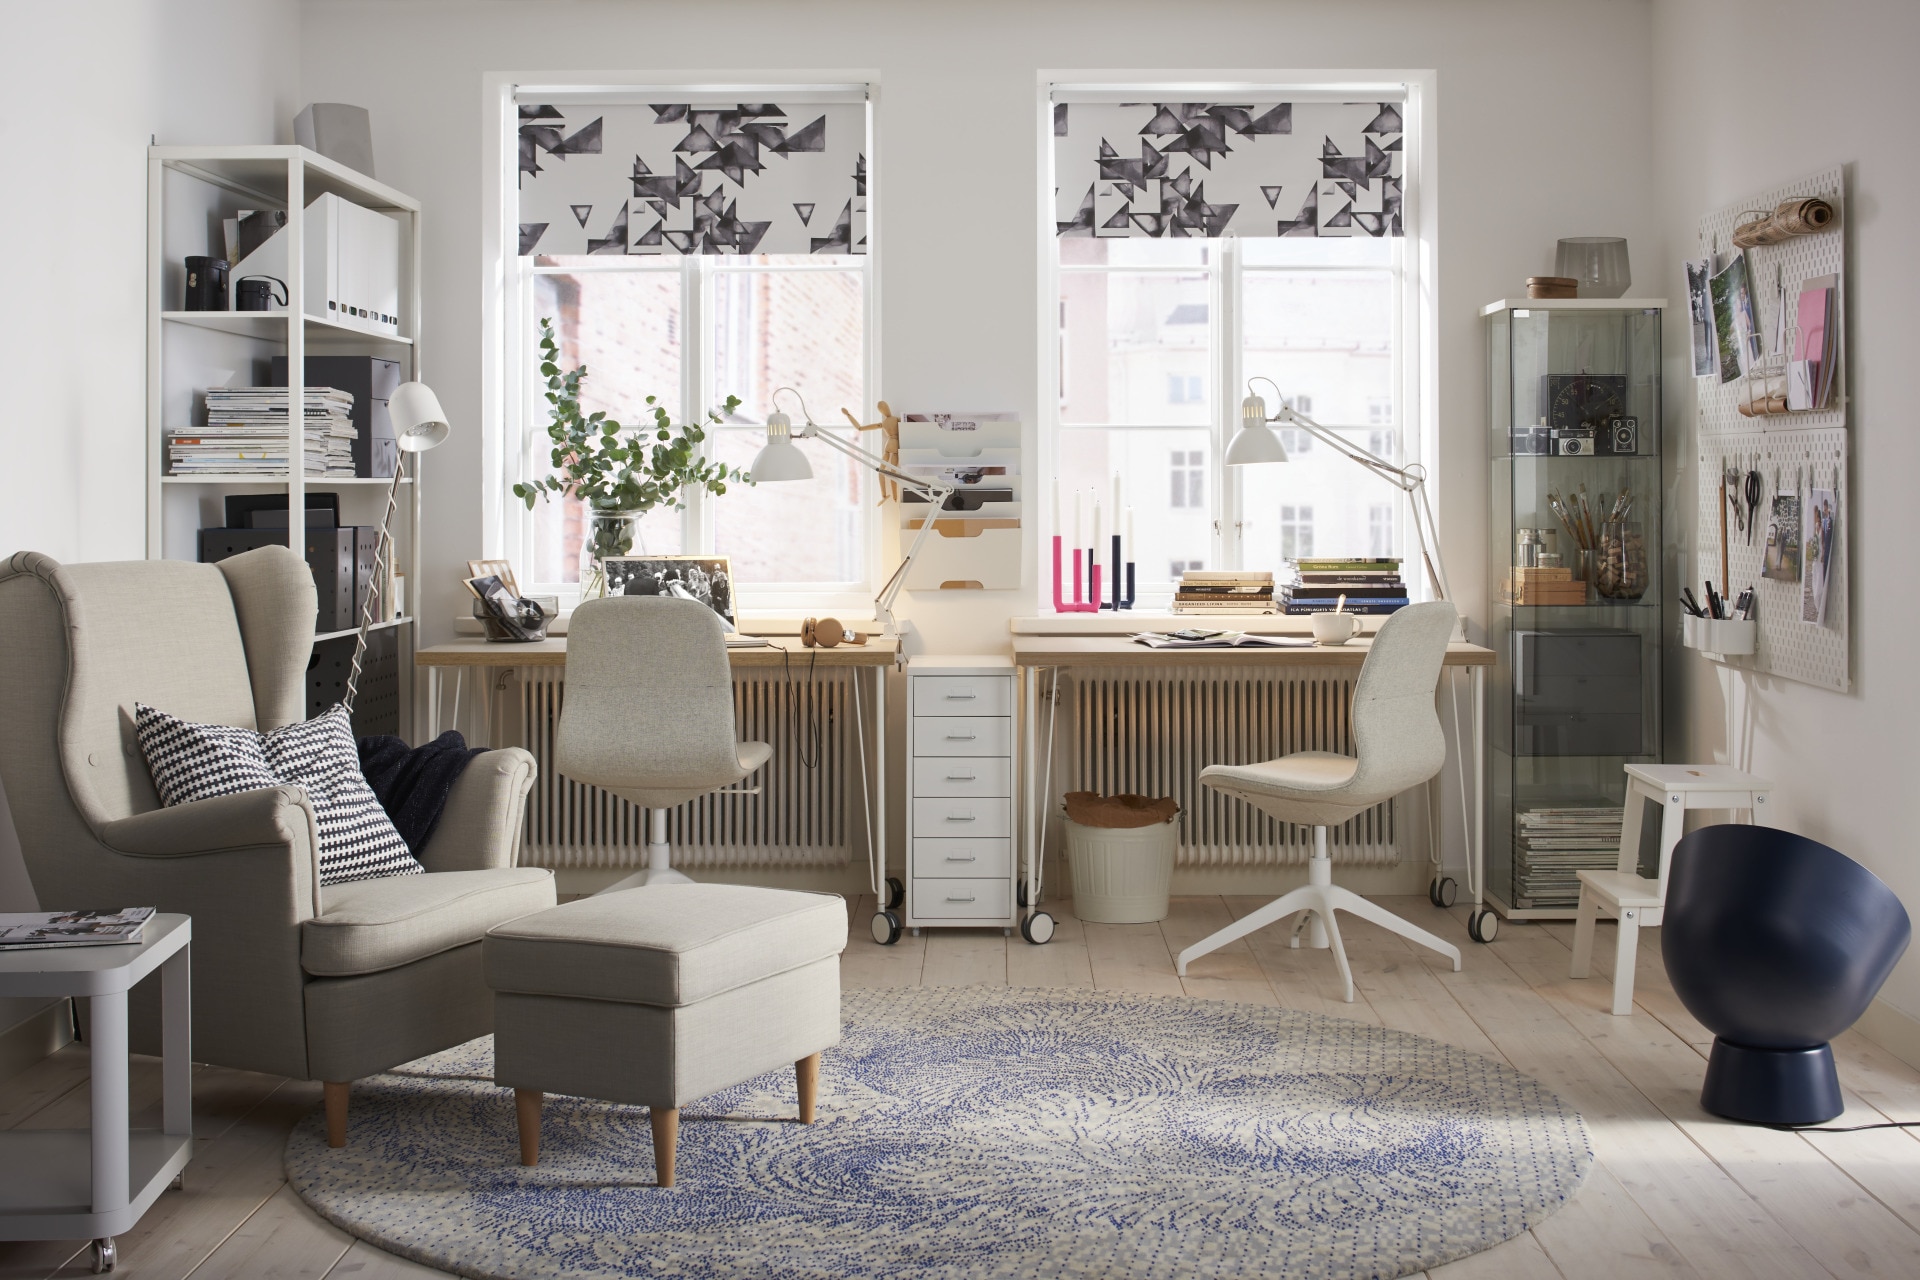 IKEA Home Office Design